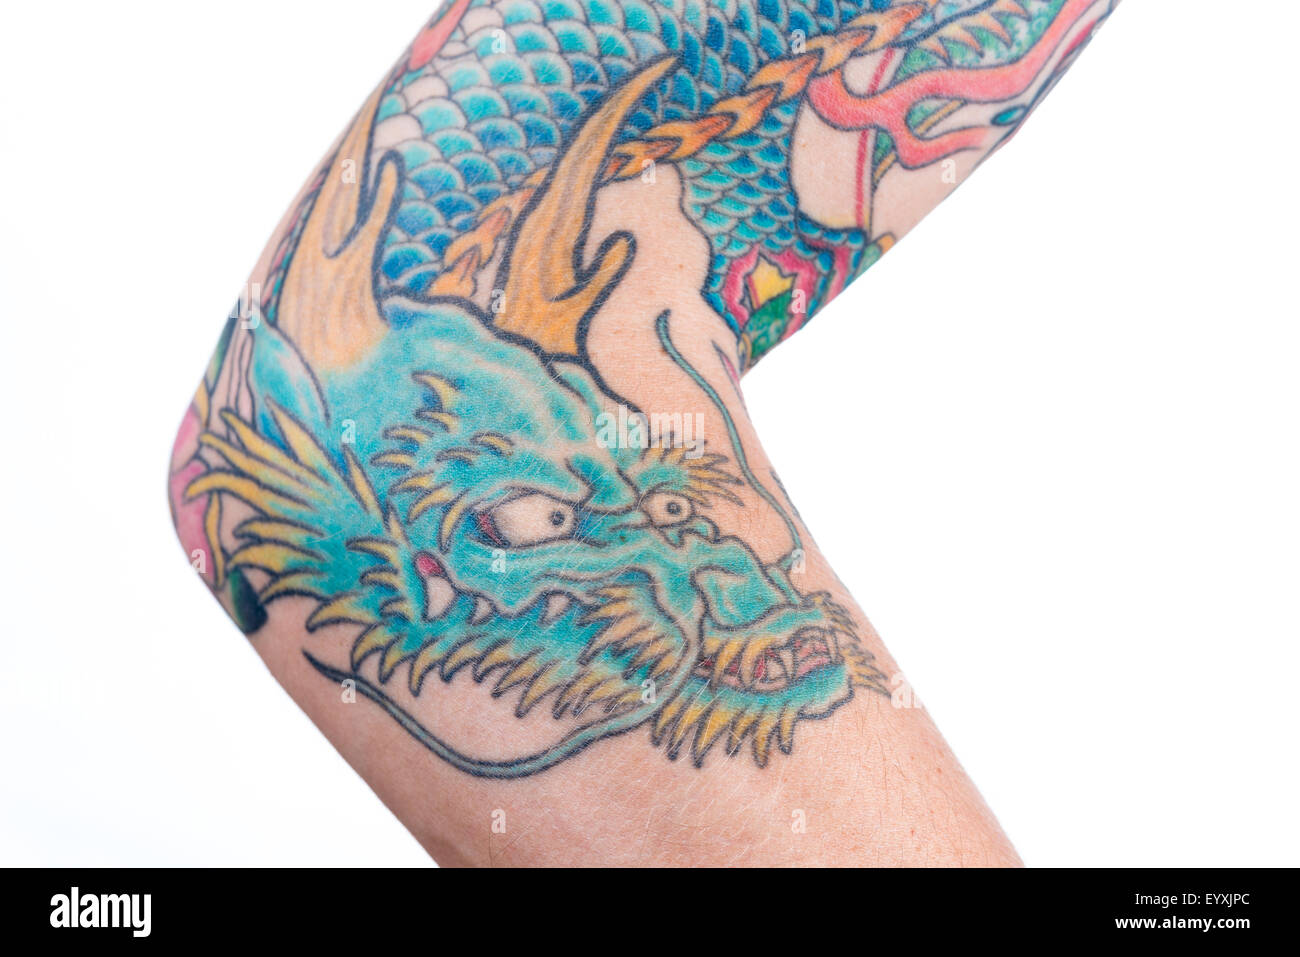 Une vue d'un bleu/vert tatouage de dragon dans le style japonais sur l'avant-bras, le coude et le biceps d'un homme de race blanche isolée sur un wh Banque D'Images